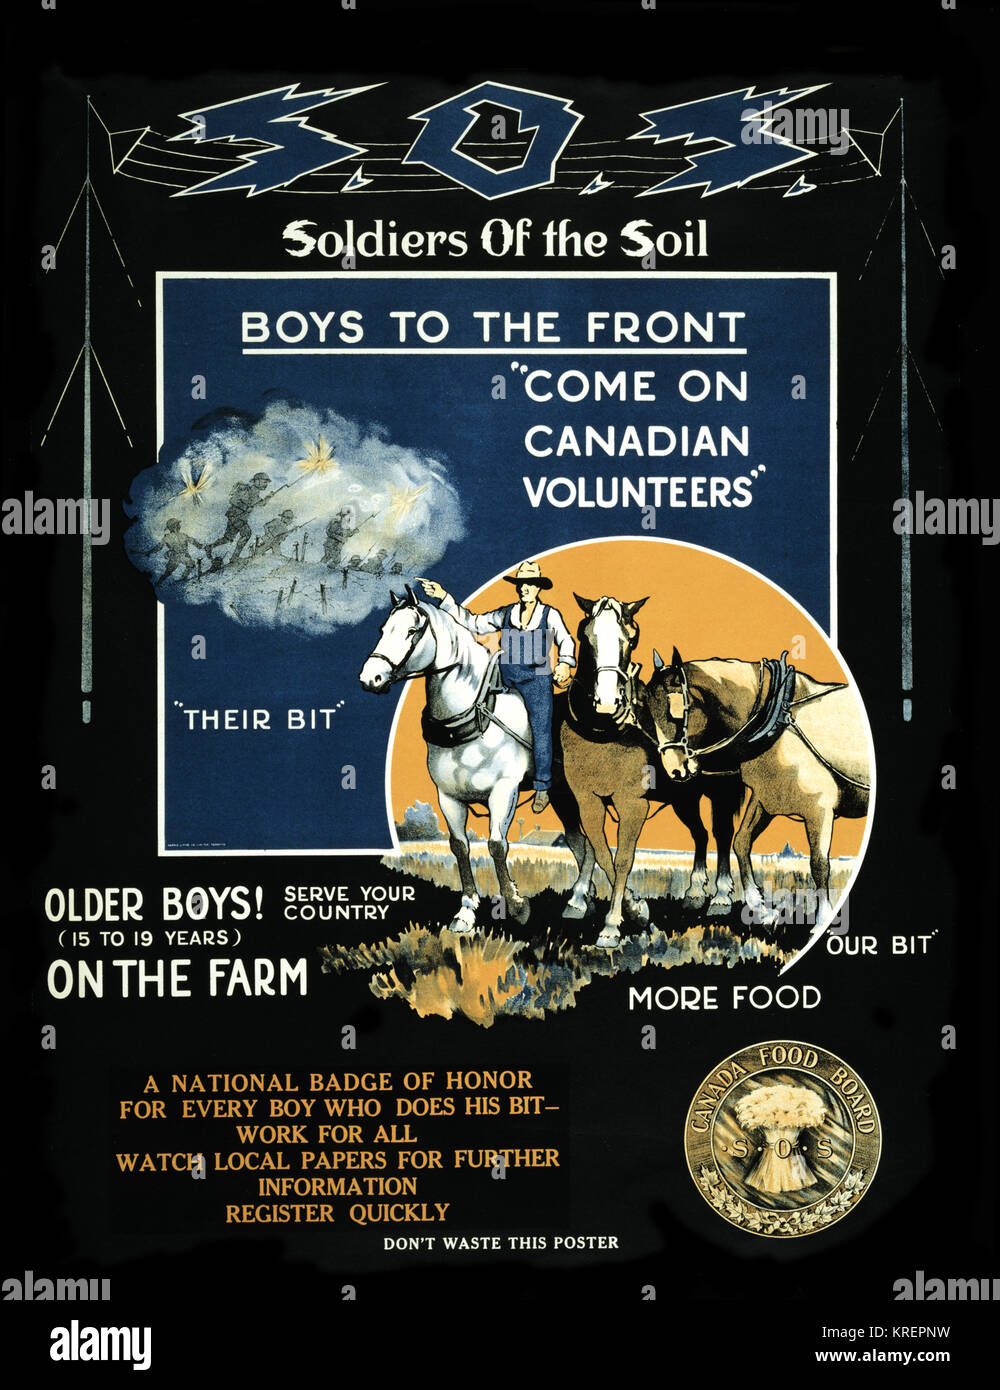 Plakat zeigt ein Landwirt auf einem Pferd, die zwei Pferde zeigen und zu Vignette mit Soldaten in der Schlacht Pflug. Text ermutigt Junge im Alter zwischen 15 und 19 für die Soldaten des Bodens Programm zu erbieten. Stockfoto